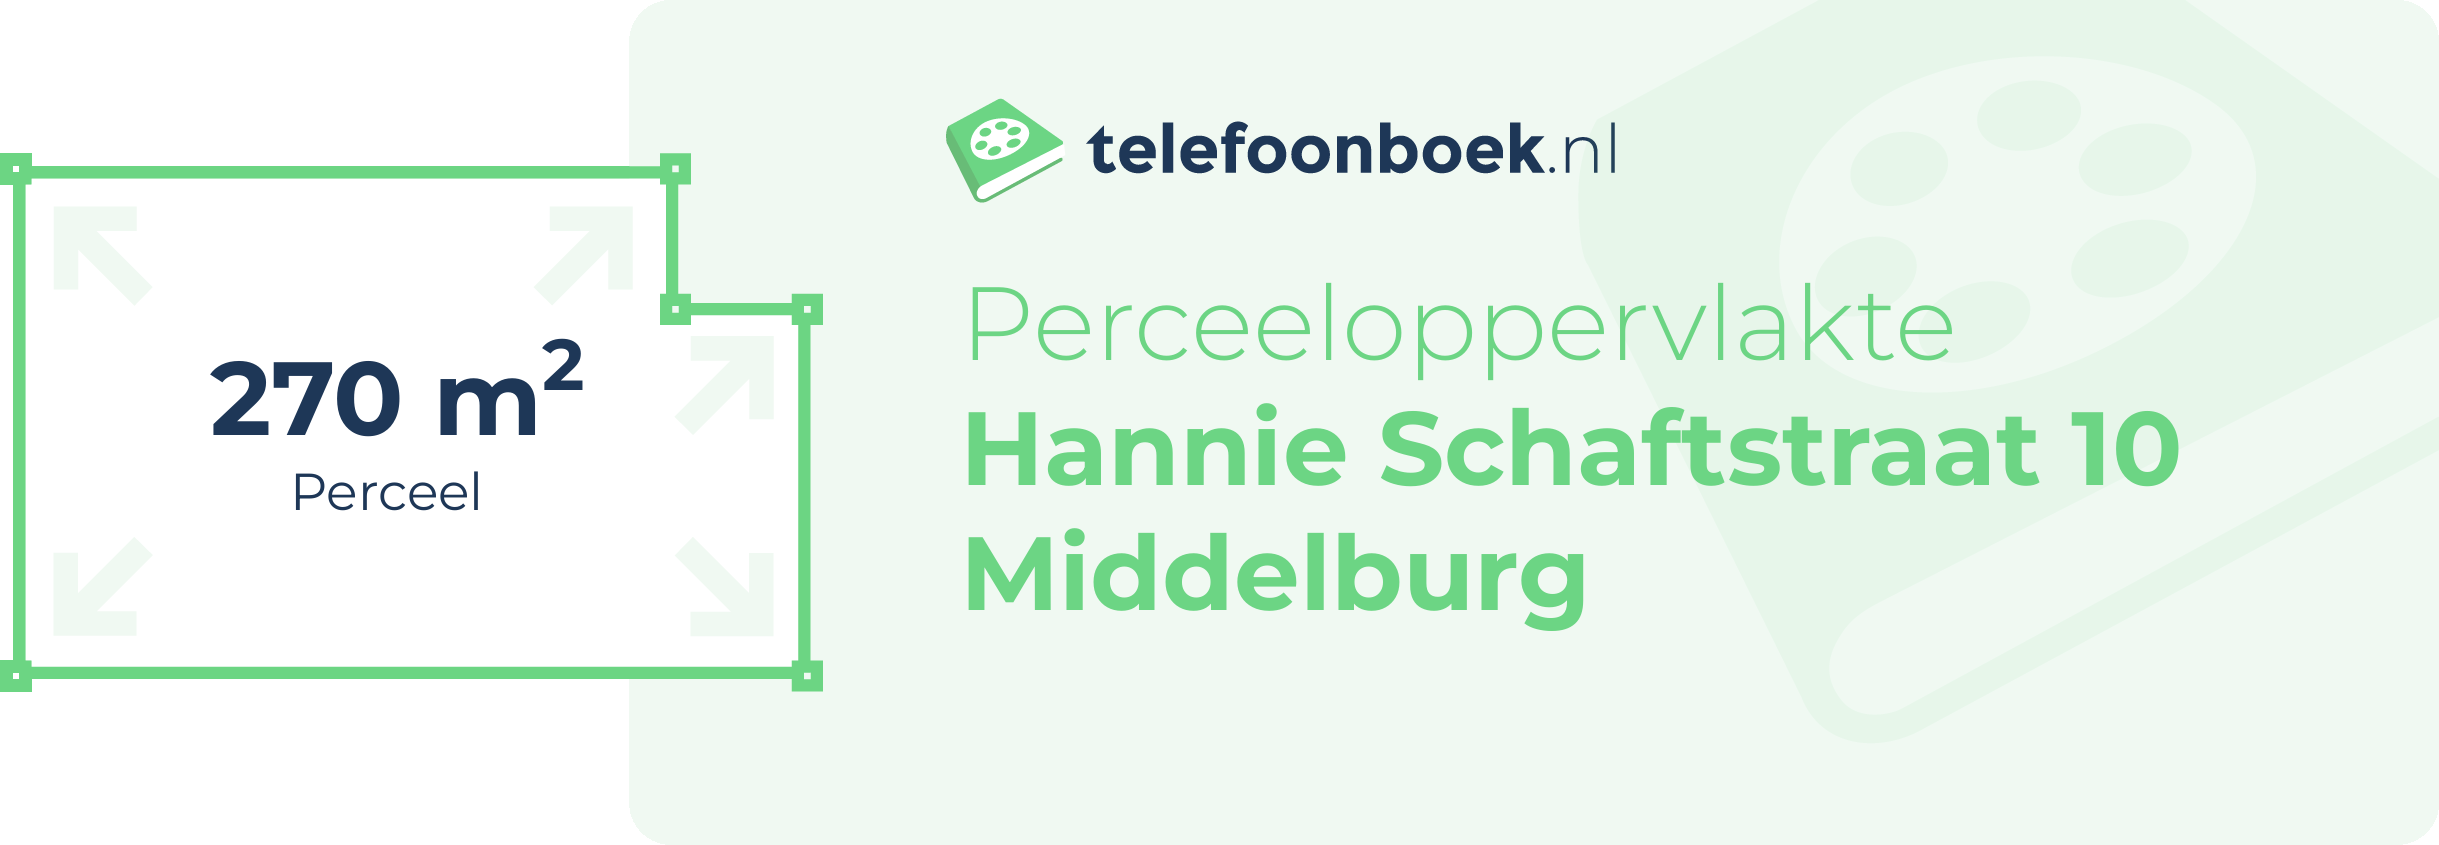 Perceeloppervlakte Hannie Schaftstraat 10 Middelburg